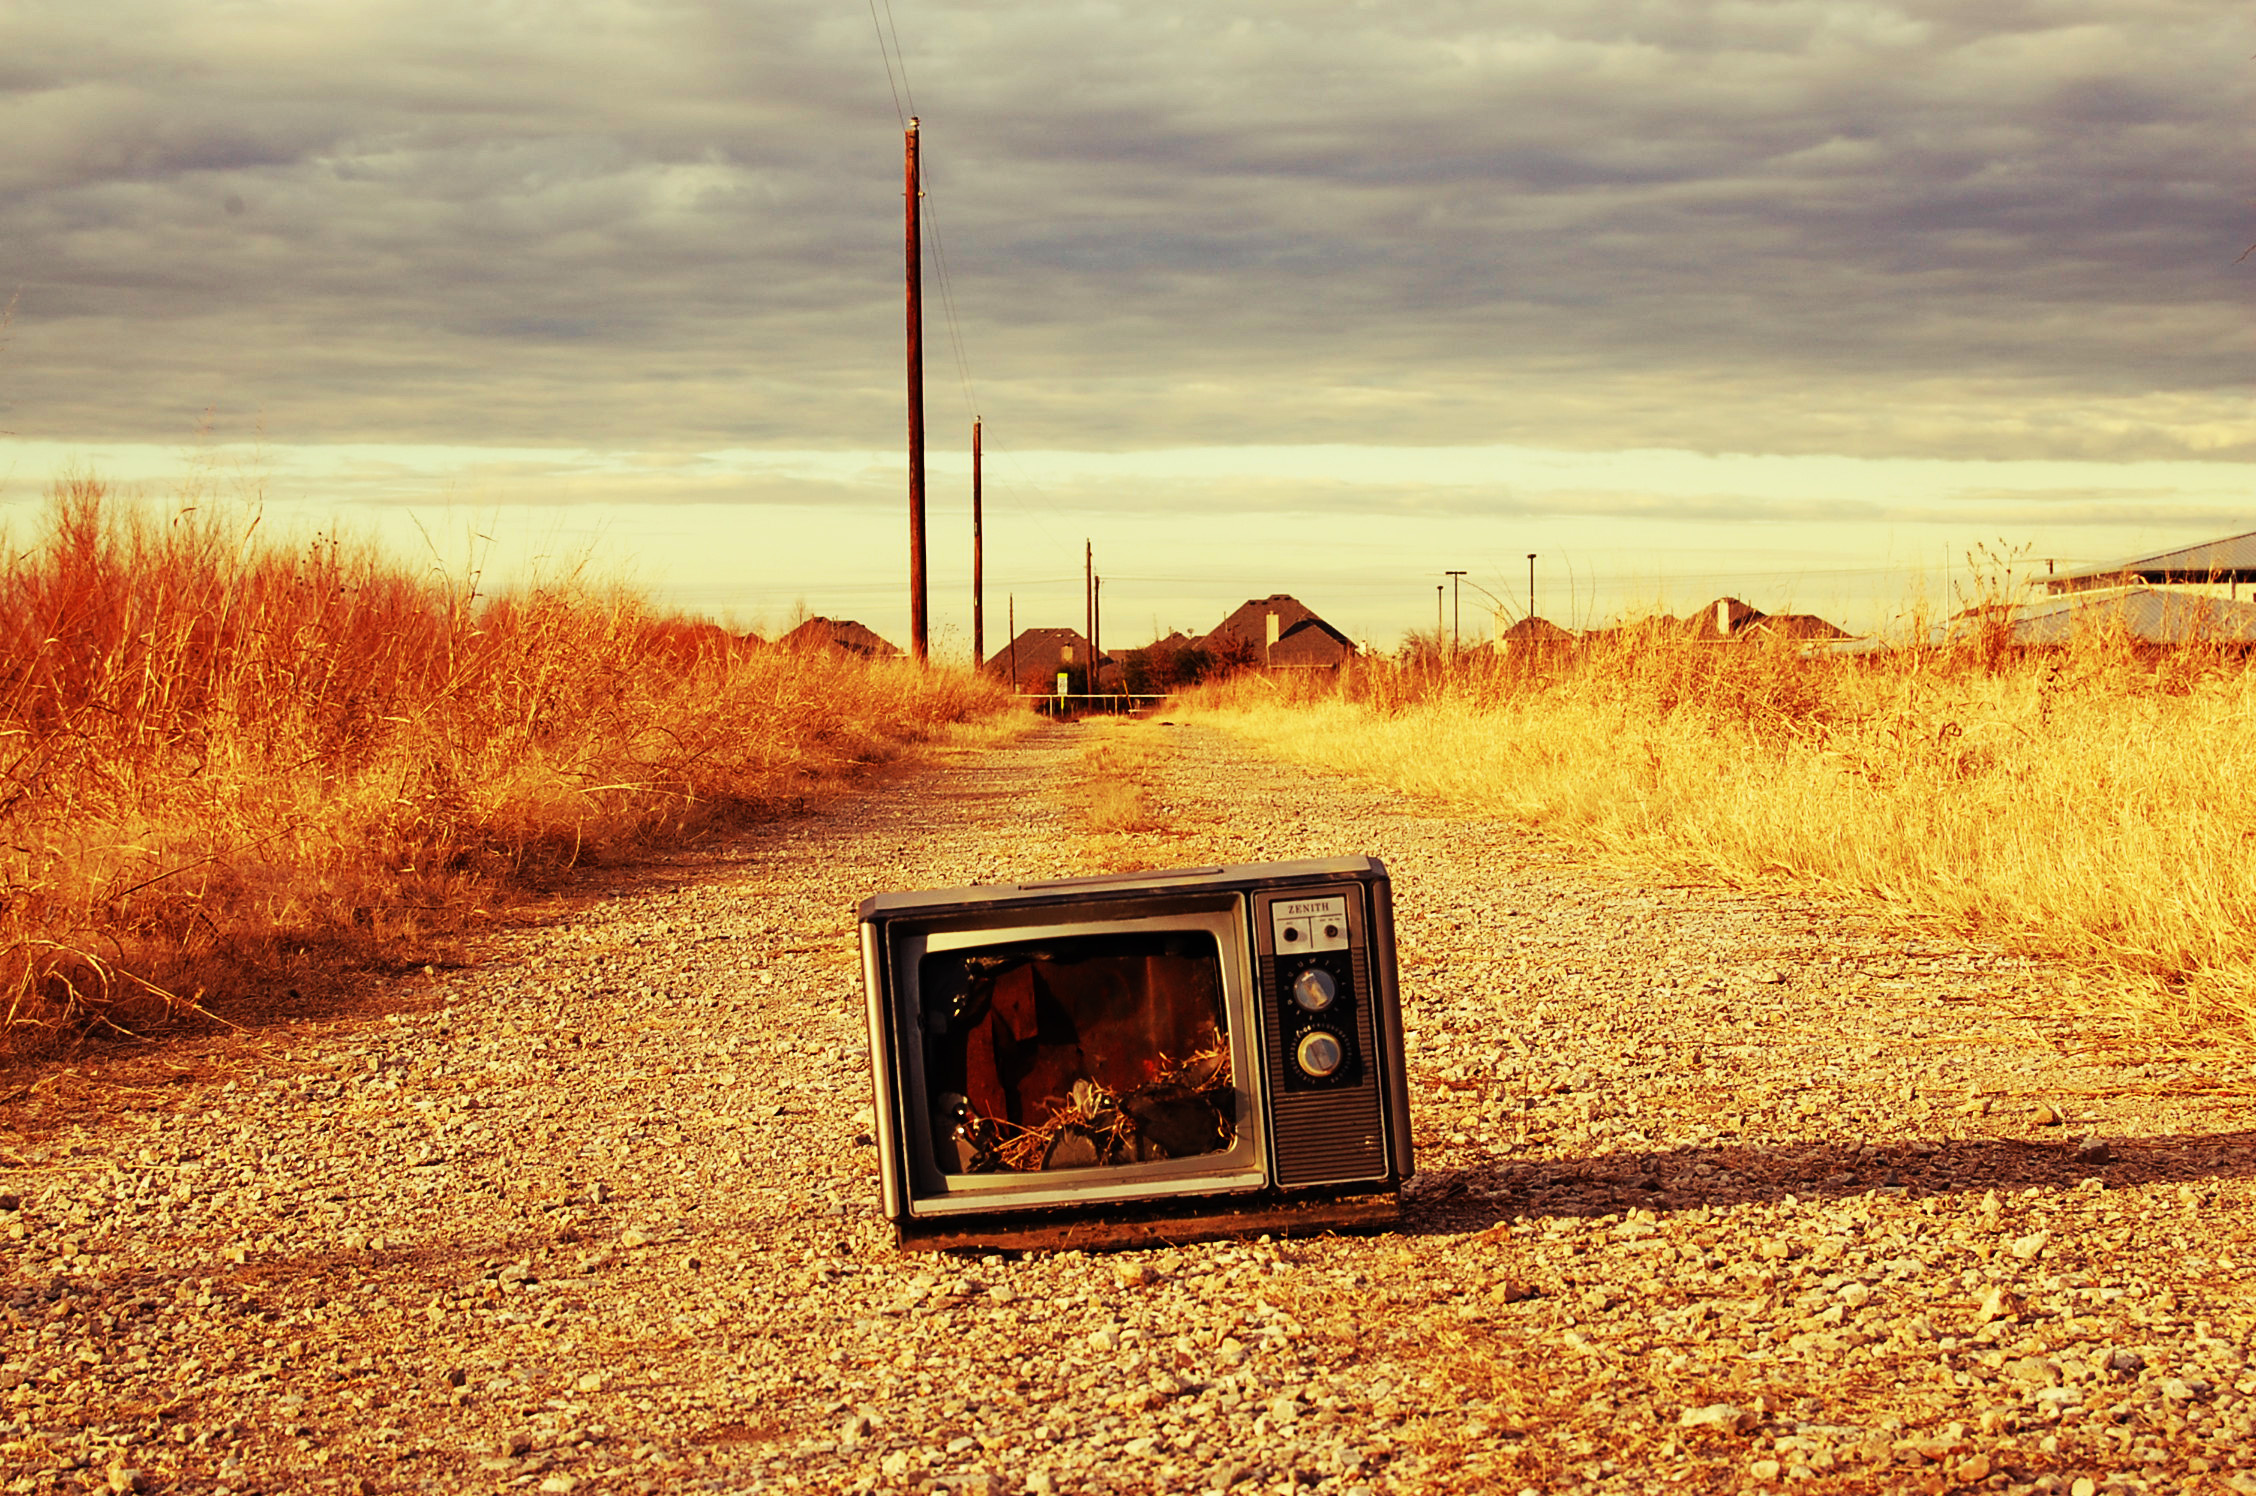 Красивая заставка на телевизор. Старый телевизор. Старинный телевизор. Телевизор в поле. Ретро телевизор.